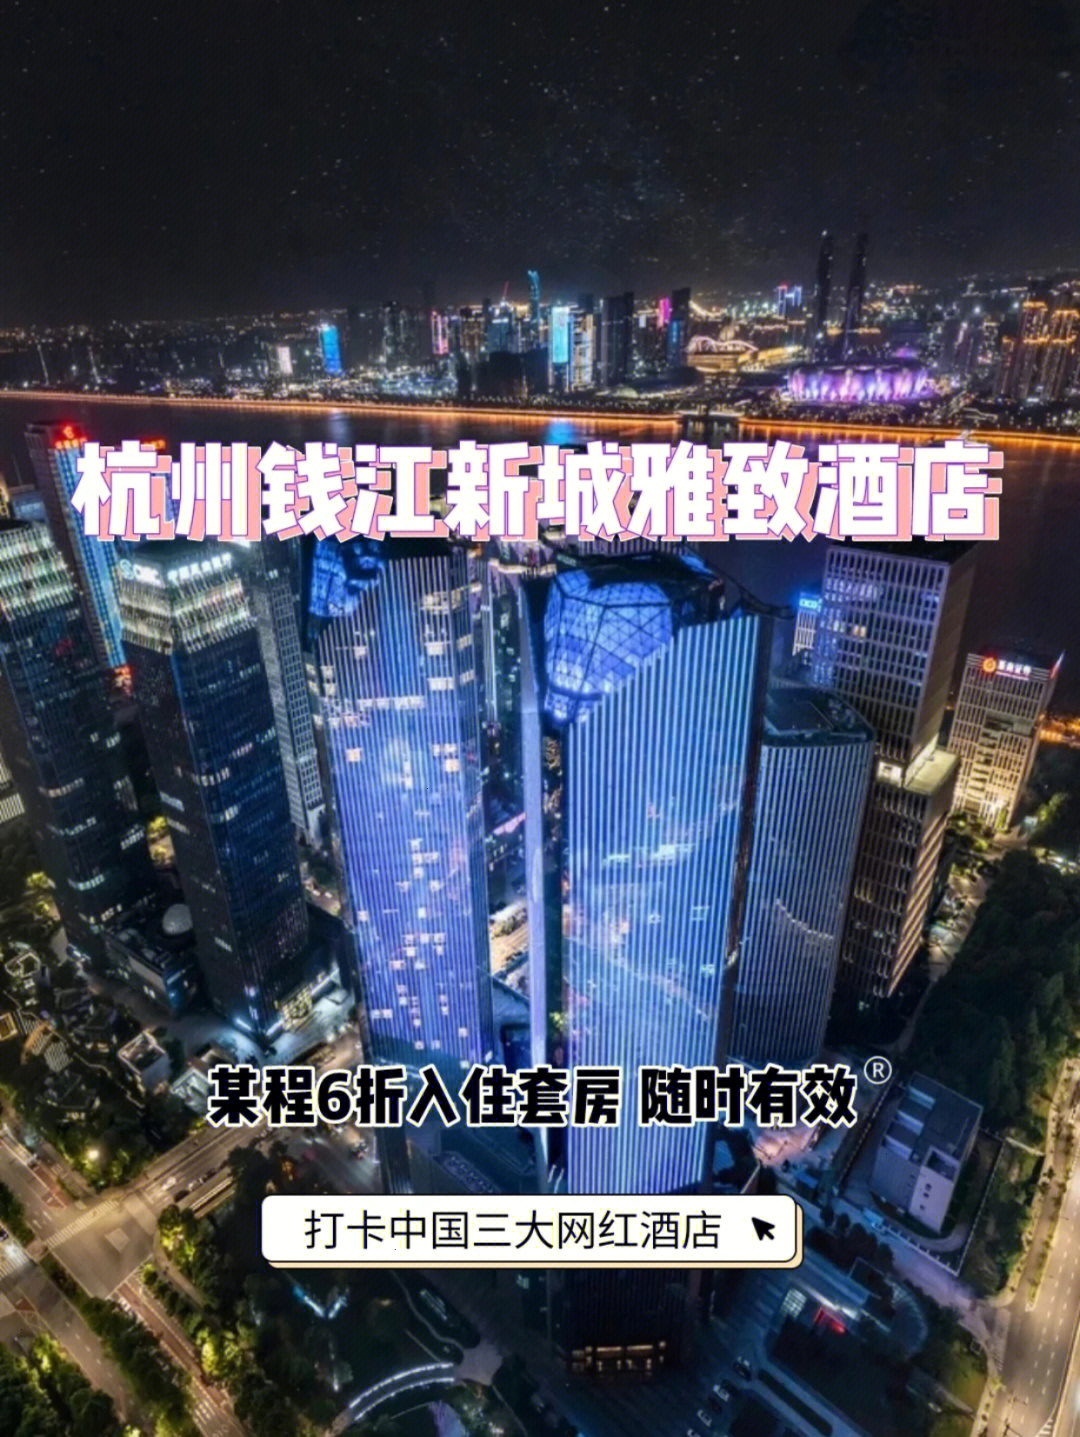 杭州钱江新城雅致人均300元杭州网红酒店